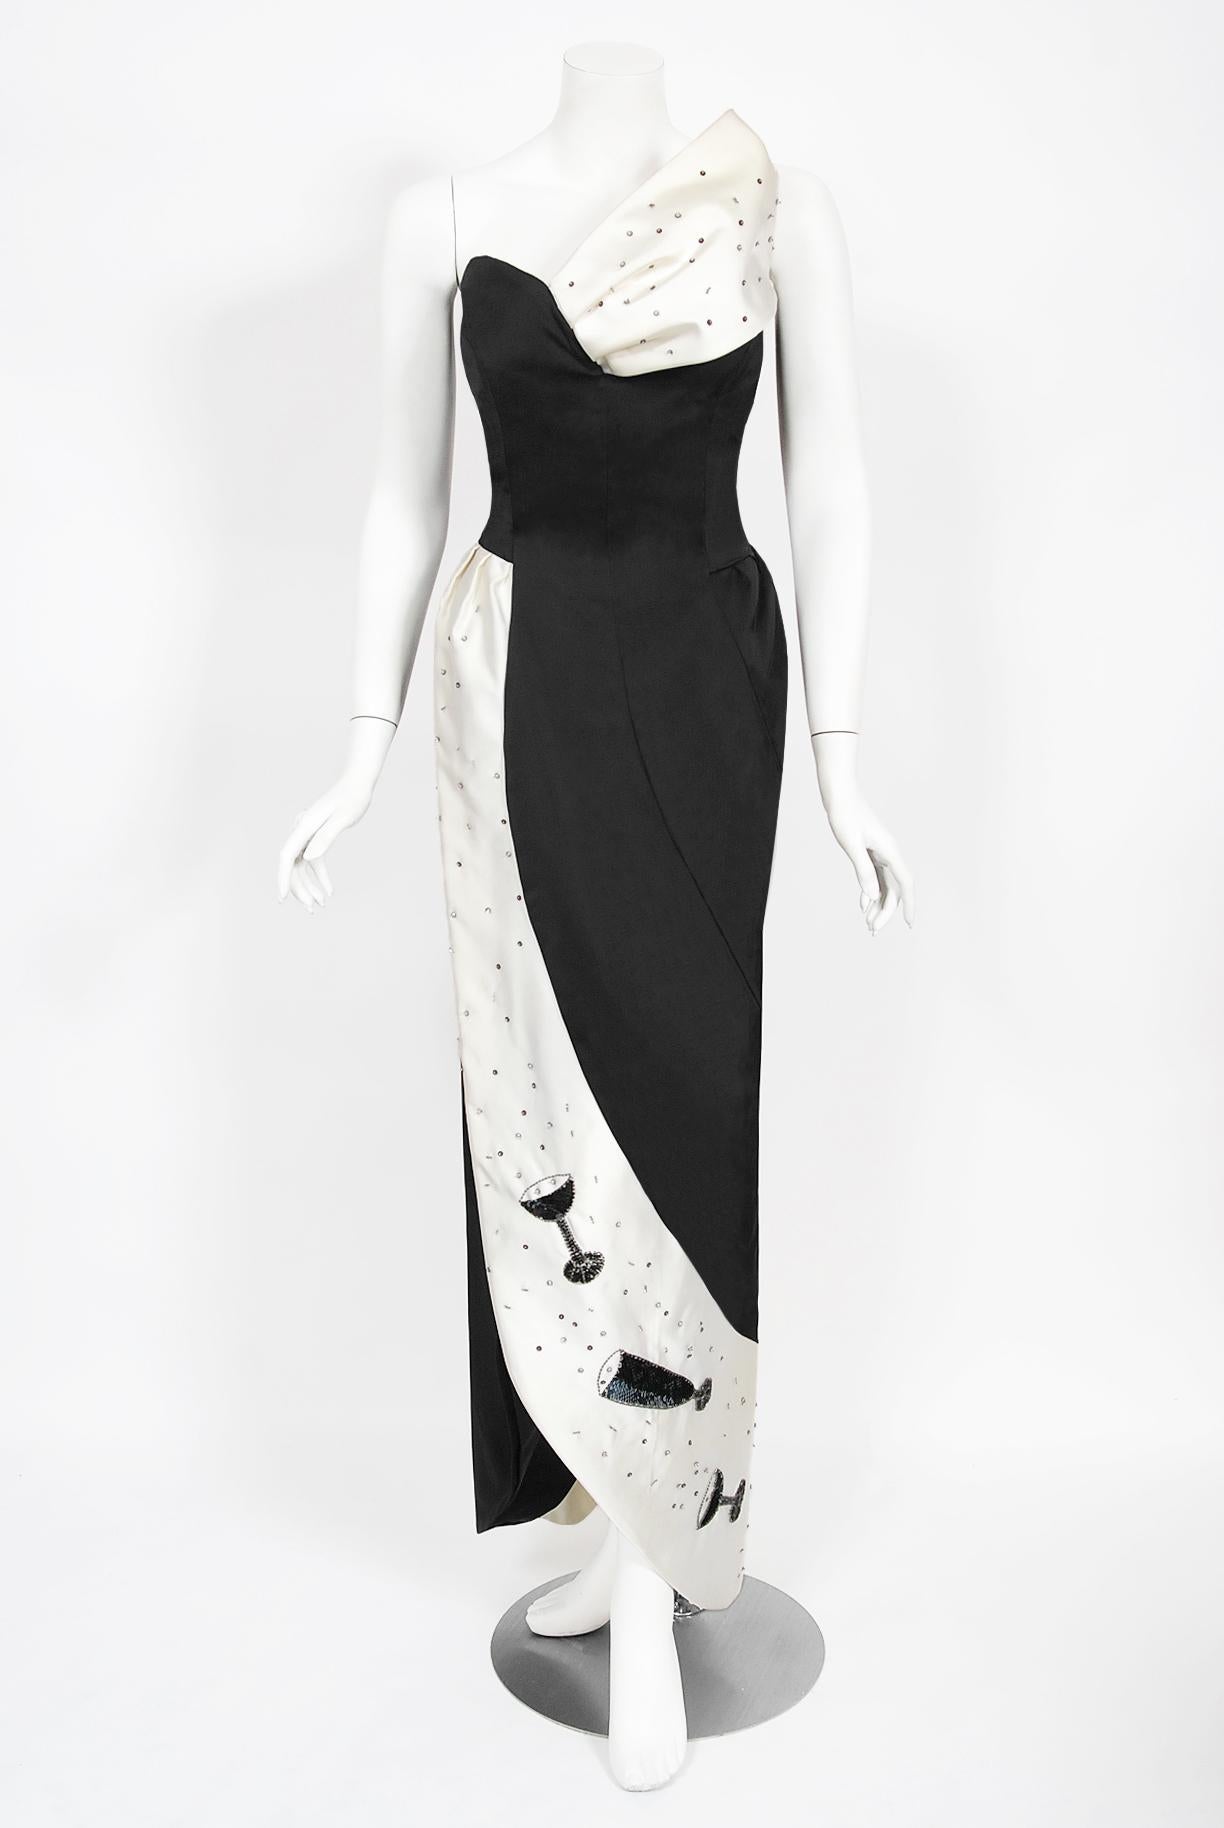 Une robe fantaisiste et totalement unique en son genre, en satin noir et blanc, signée Tan Giudicelli, de Paris, avec des flûtes de champagne et des bulles pailletées. Il était connu pour son approche surréaliste de la mode et cette robe ne fait pas